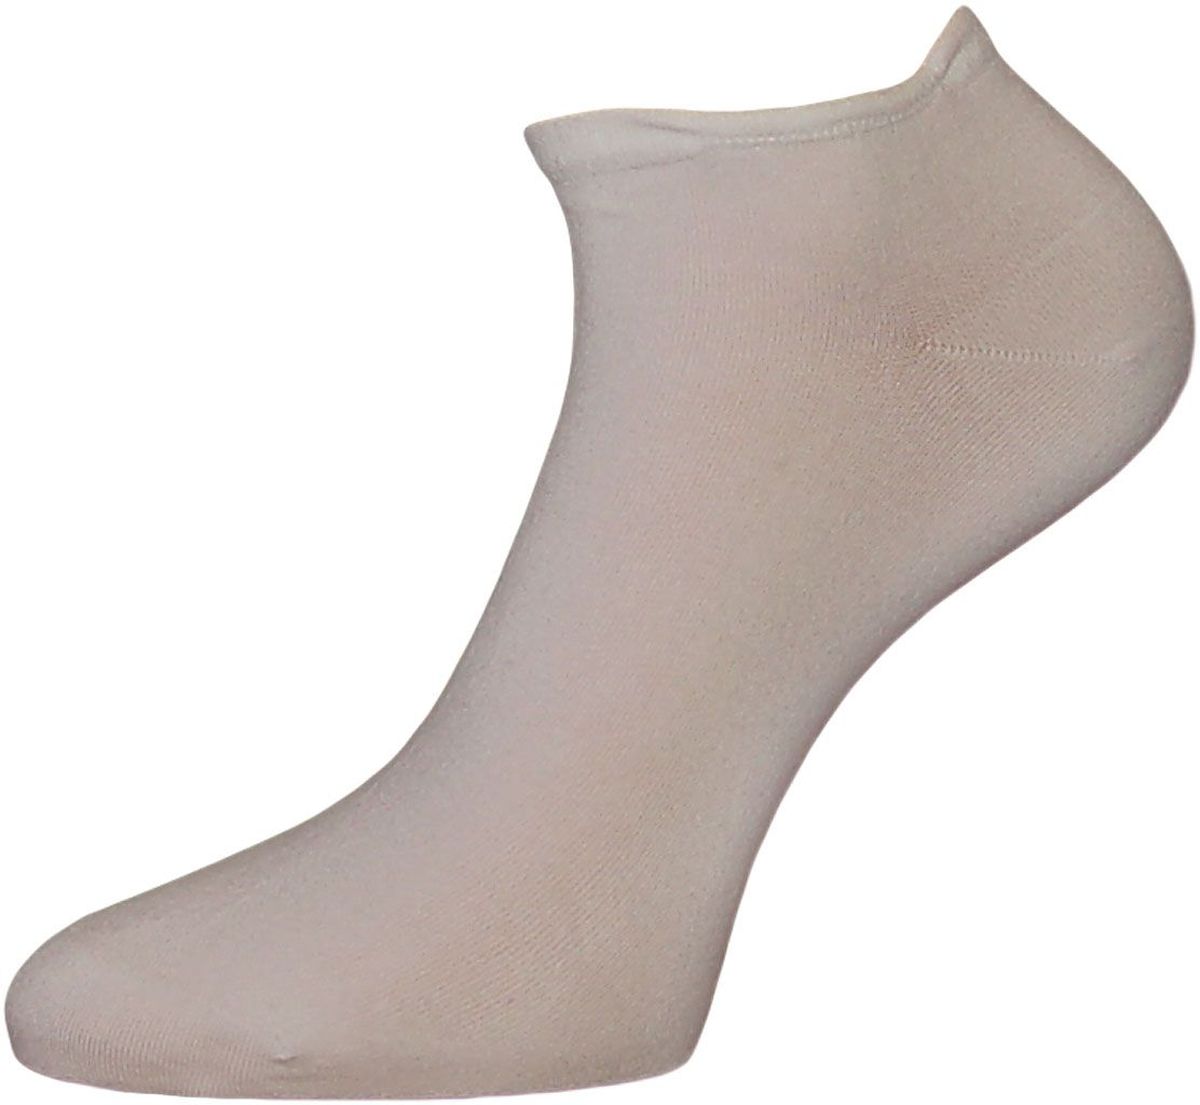 ZCL4Мужские носки Гранд выполнены из хлопка и оформлены на паголенке рисунком гребешок. Основа материала - высококачественный хлопок. Носки хорошо держат форму и обладают повышенной воздухопроницаемостью, не линяют после многочисленных стирок, имеют оптимальную высоту паголенка, кеттельный шов и мягкую анатомическую резинку.